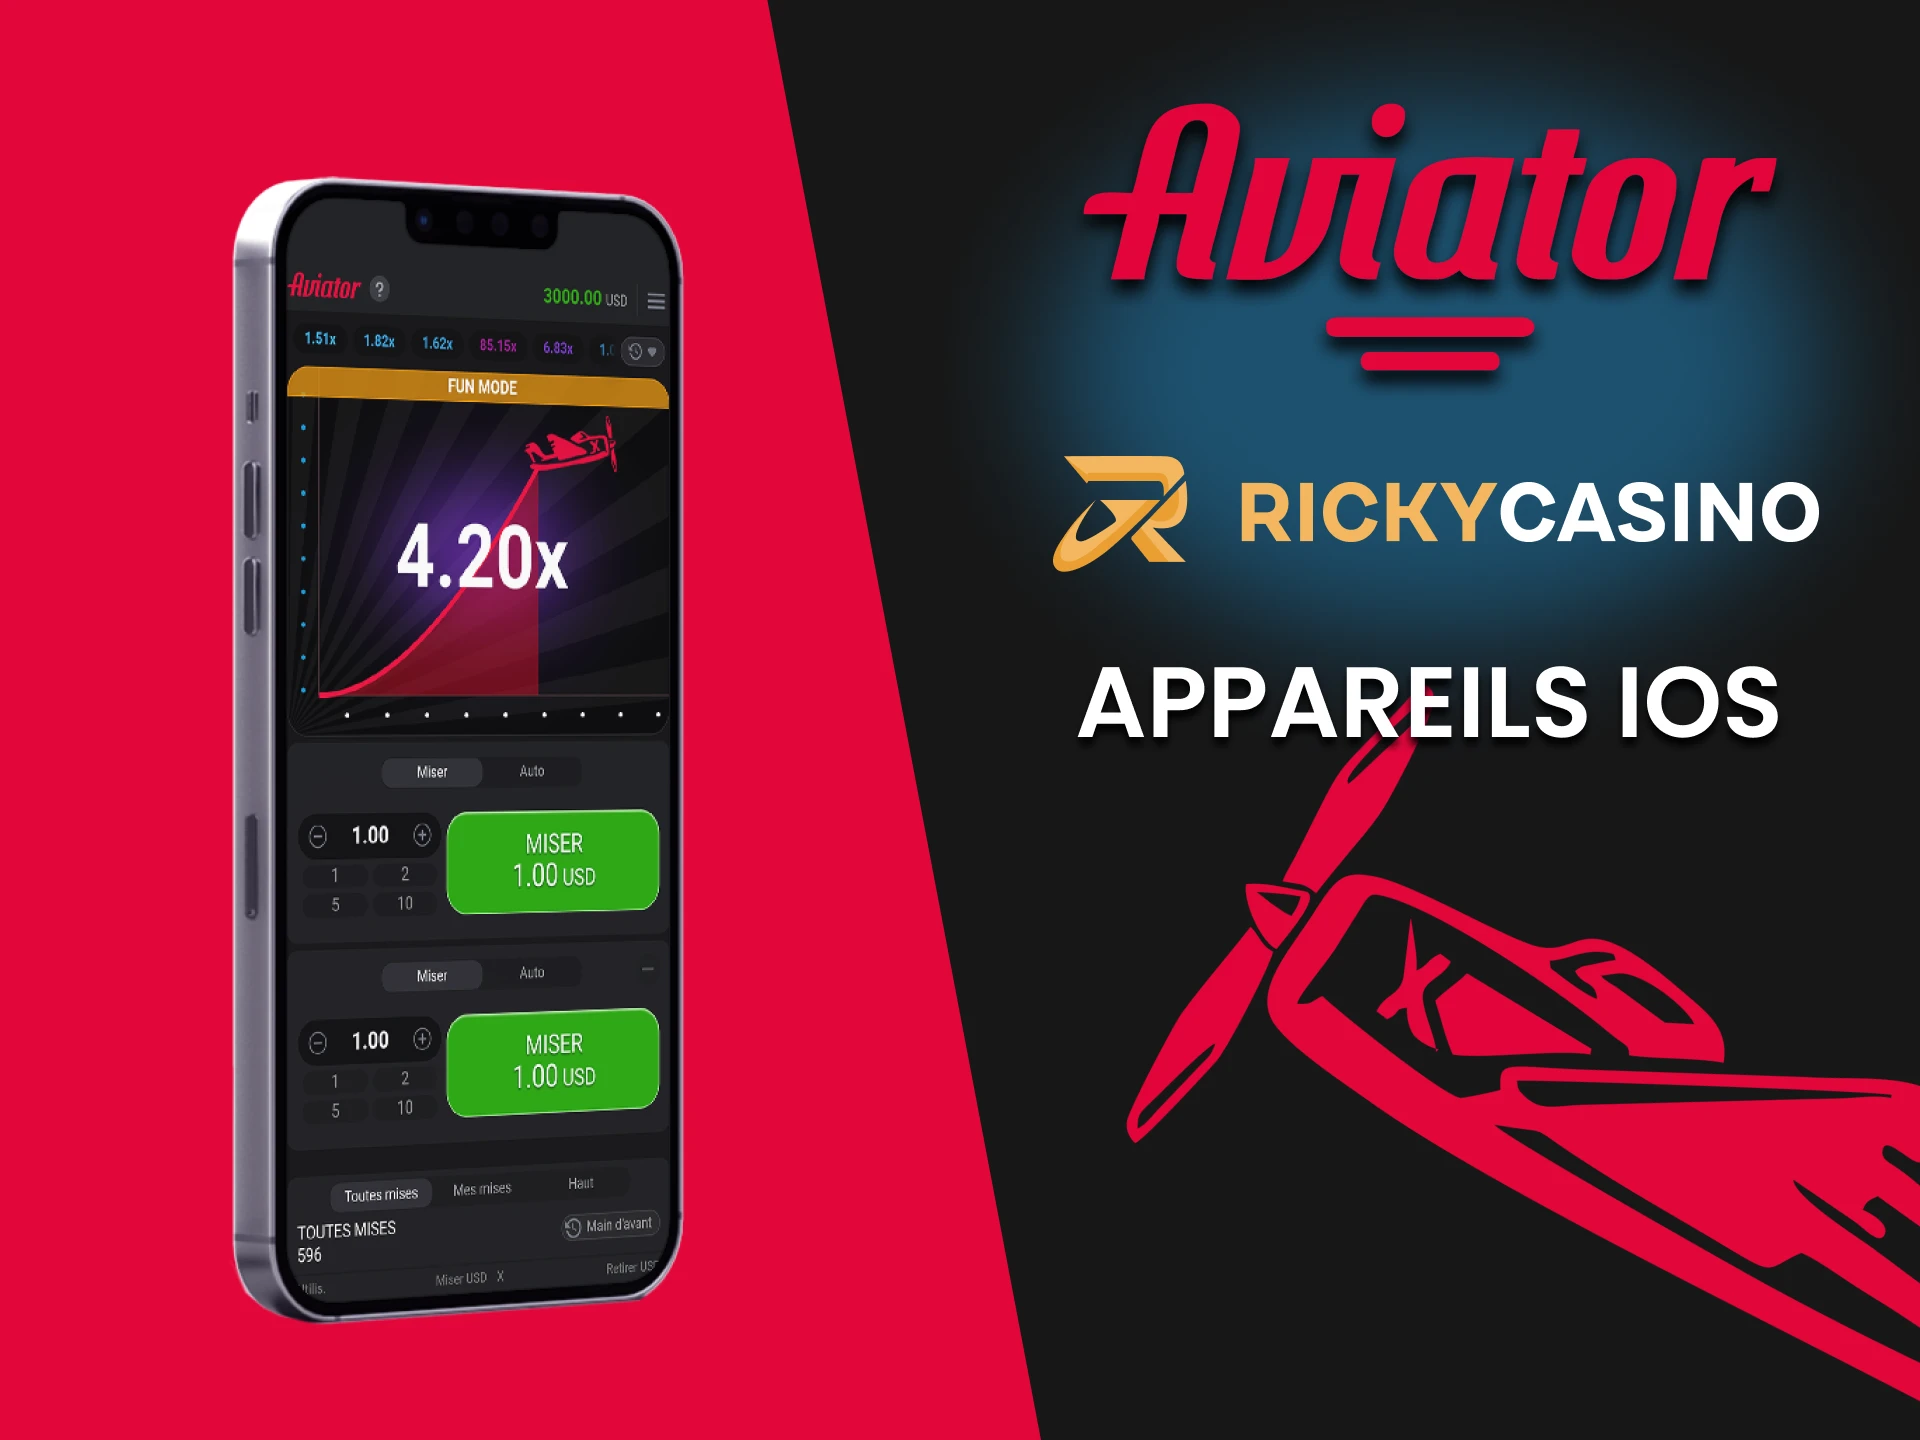 Installez l'application Ricky Casino pour jouer à Aviator sur iOS.